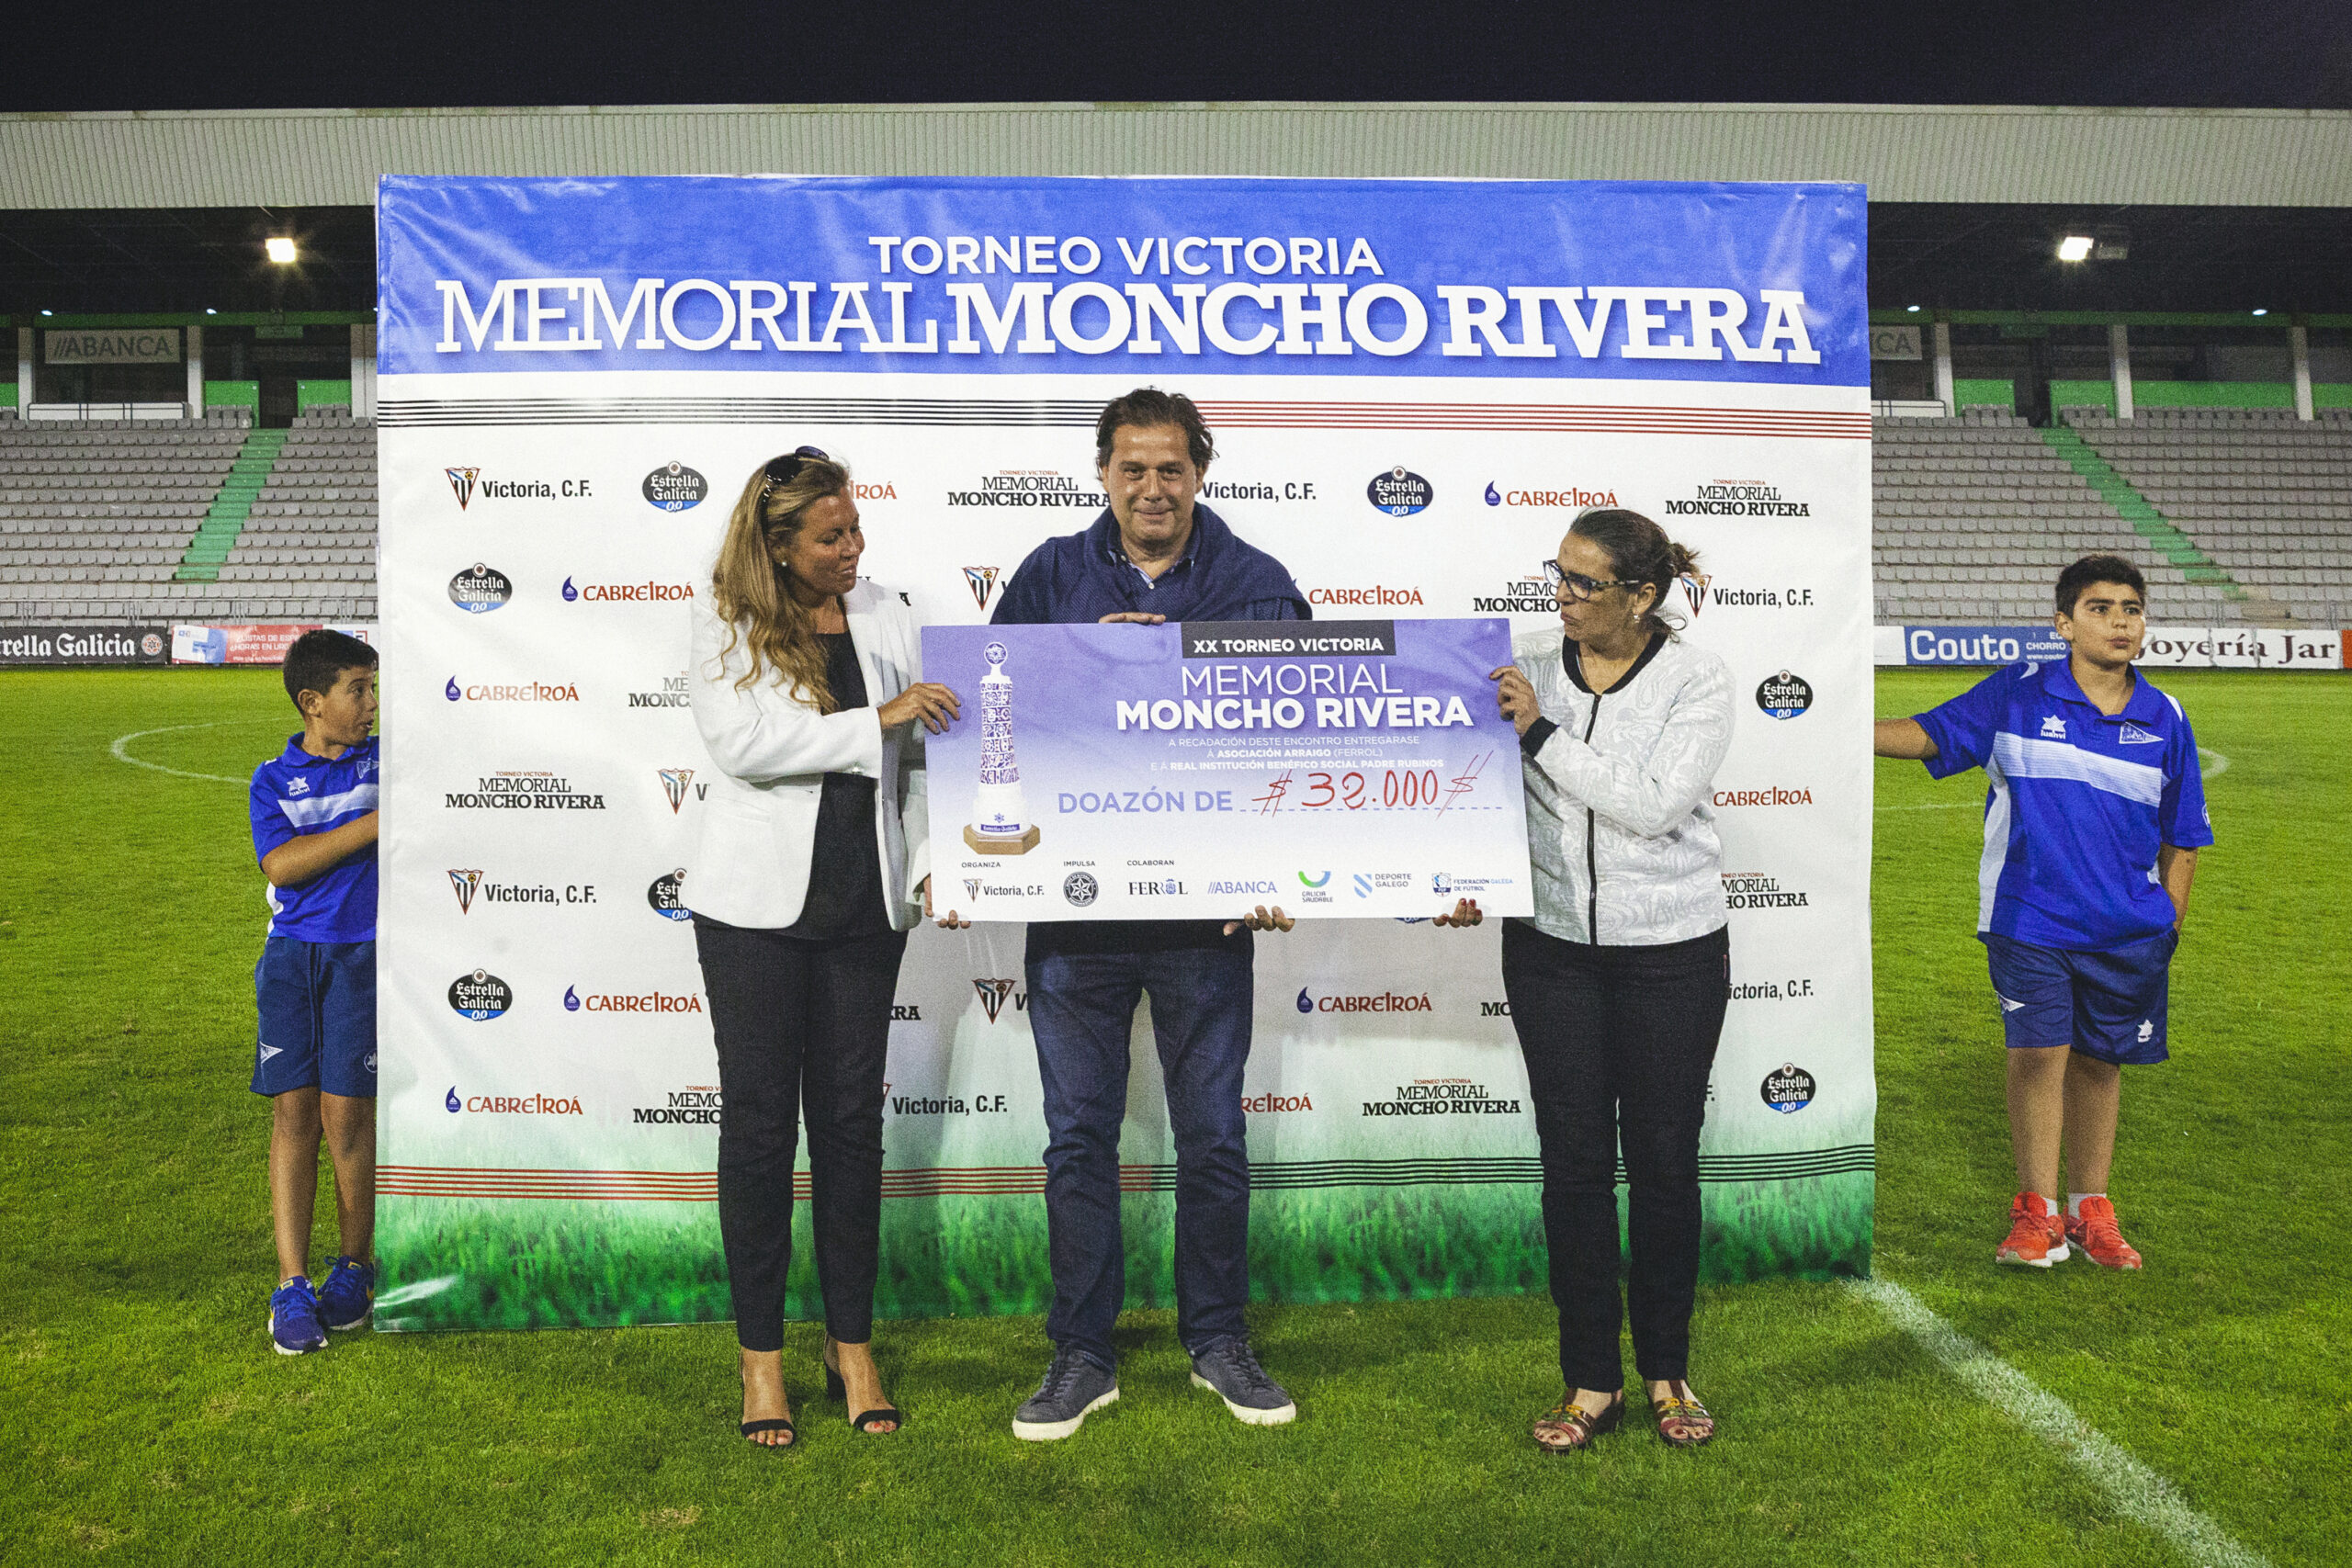 Torneo Memorial Moncho Rivera